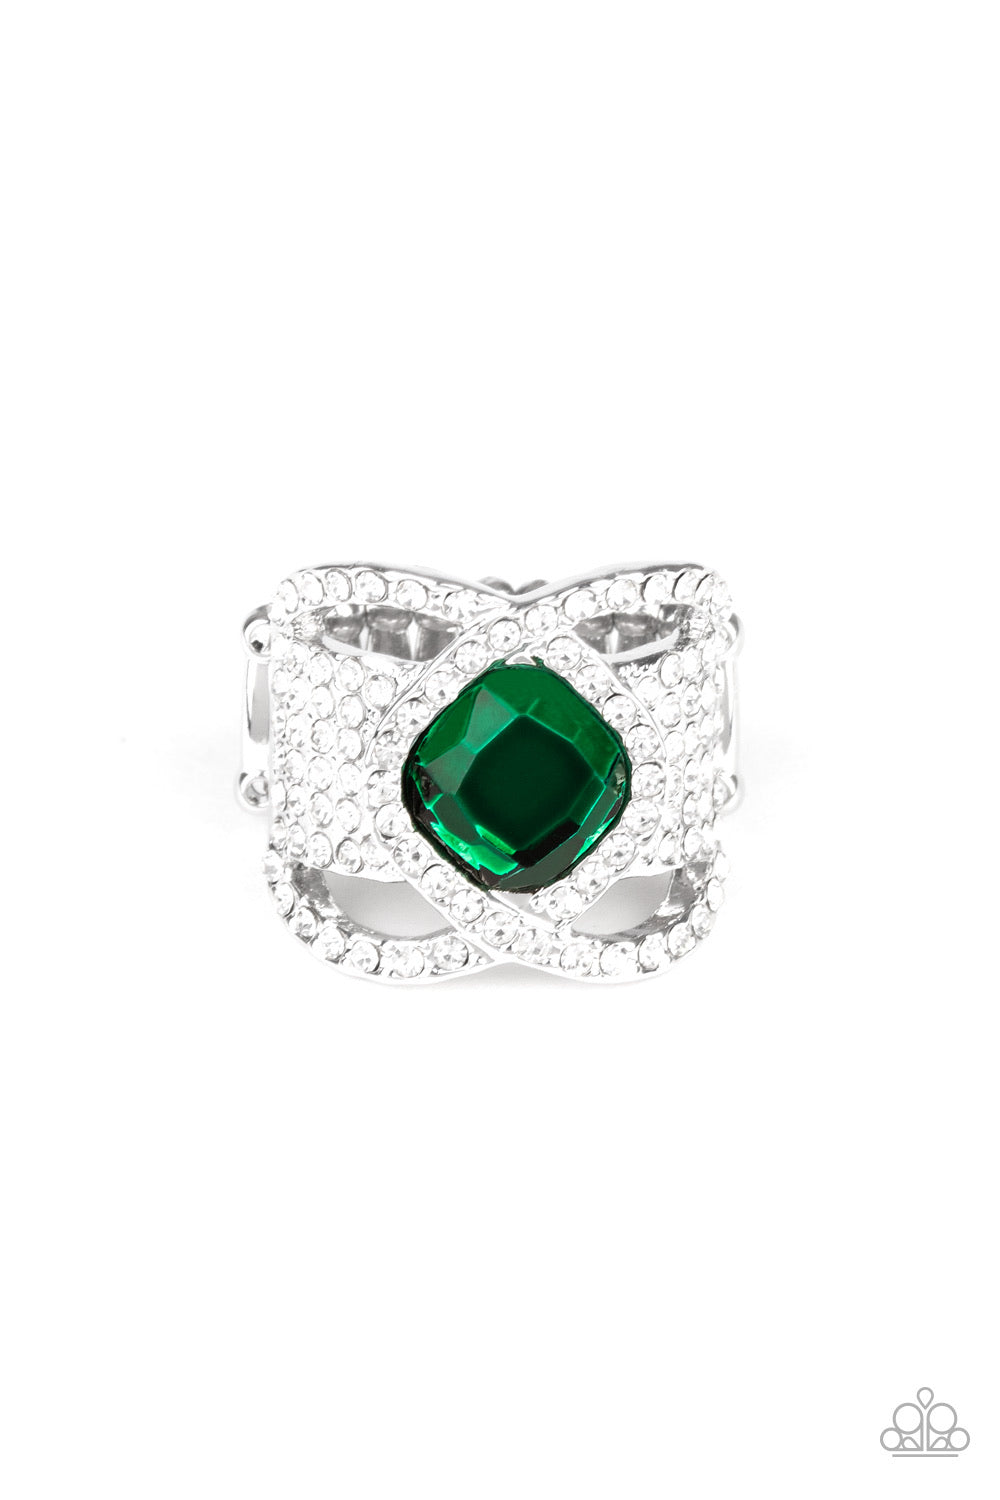 Triple Crown Twinkle -Green - Classy Elite Jewelry